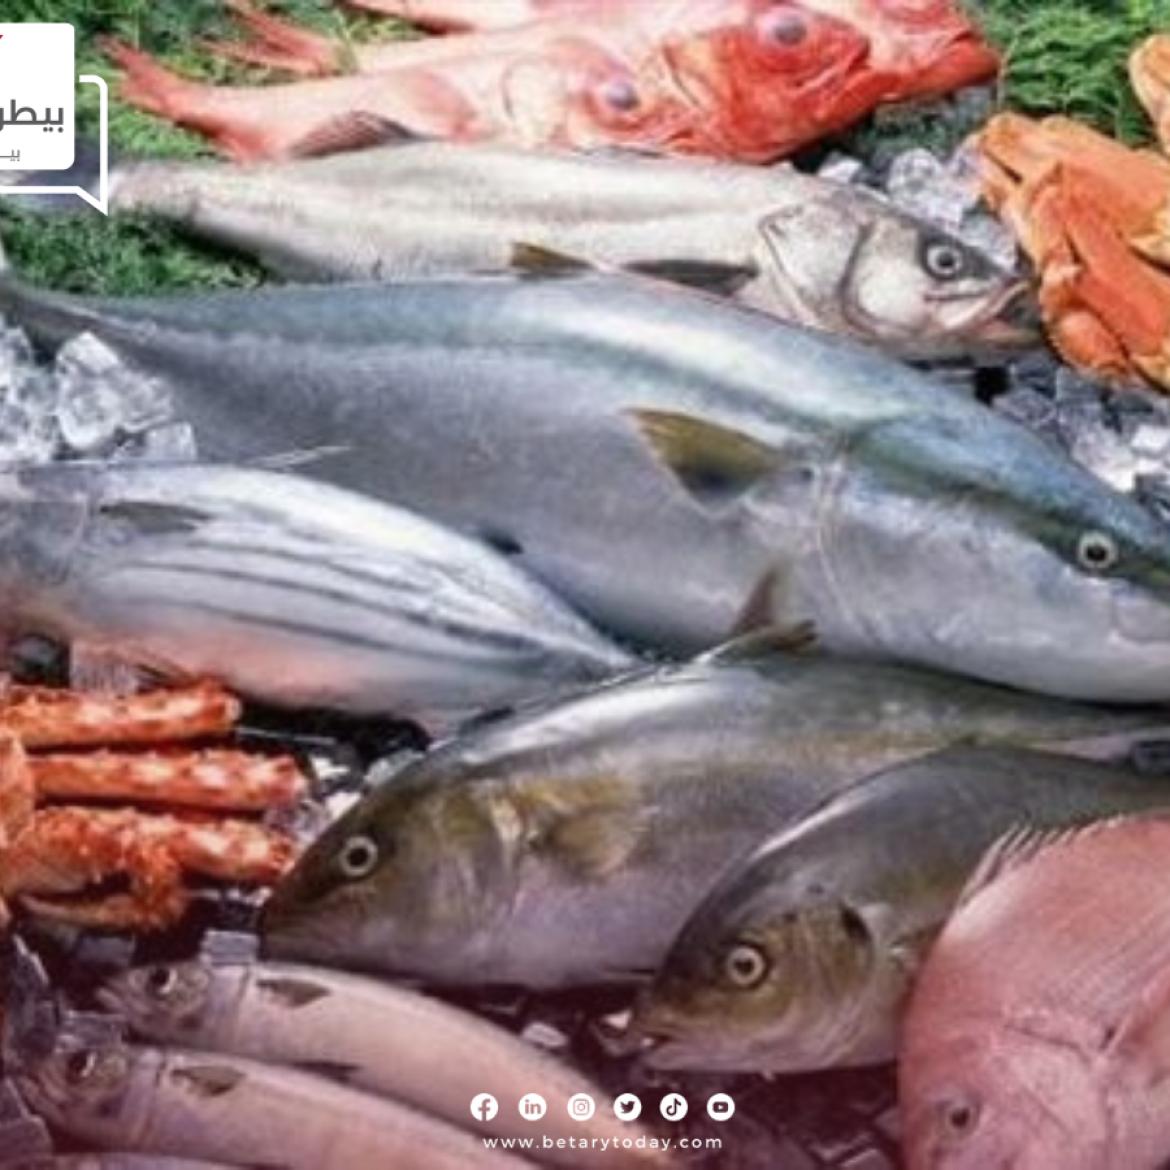 ارتفاع جديد من نصيب أسعار الأسماك والمأكولات البحرية اليوم الأحد